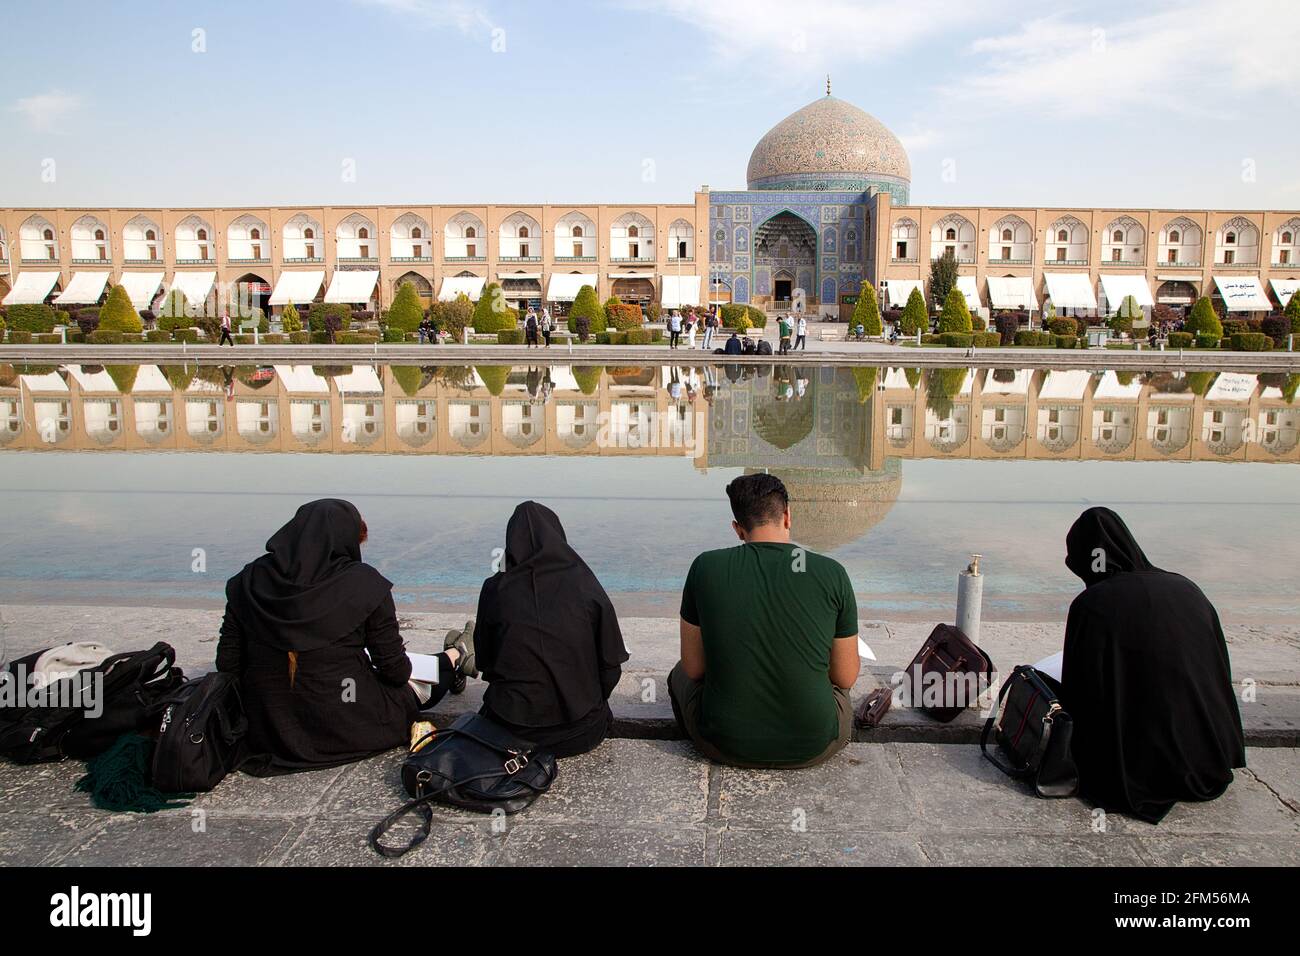 Architekturstudenten zeichnen Scheikh-Lotfollah-Moschee am Naghshe-Jahan-Platz in Isfahan, Iran Stock Photo